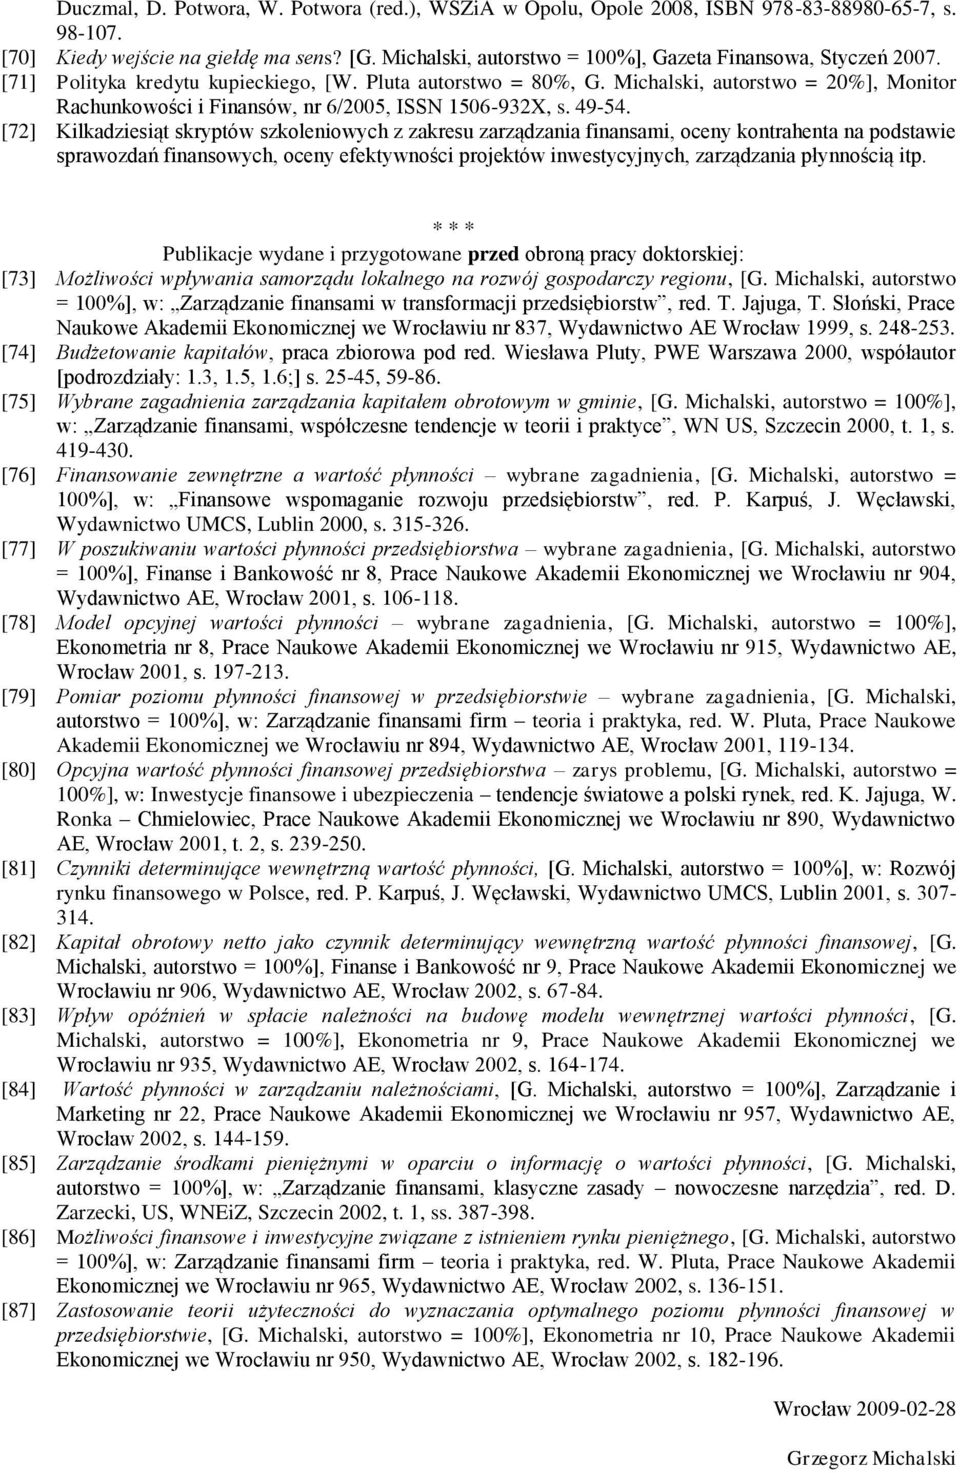 Michalski, autorstwo = 20%], Monitor Rachunkowości i Finansów, nr 6/2005, ISSN 1506-932X, s. 49-54.